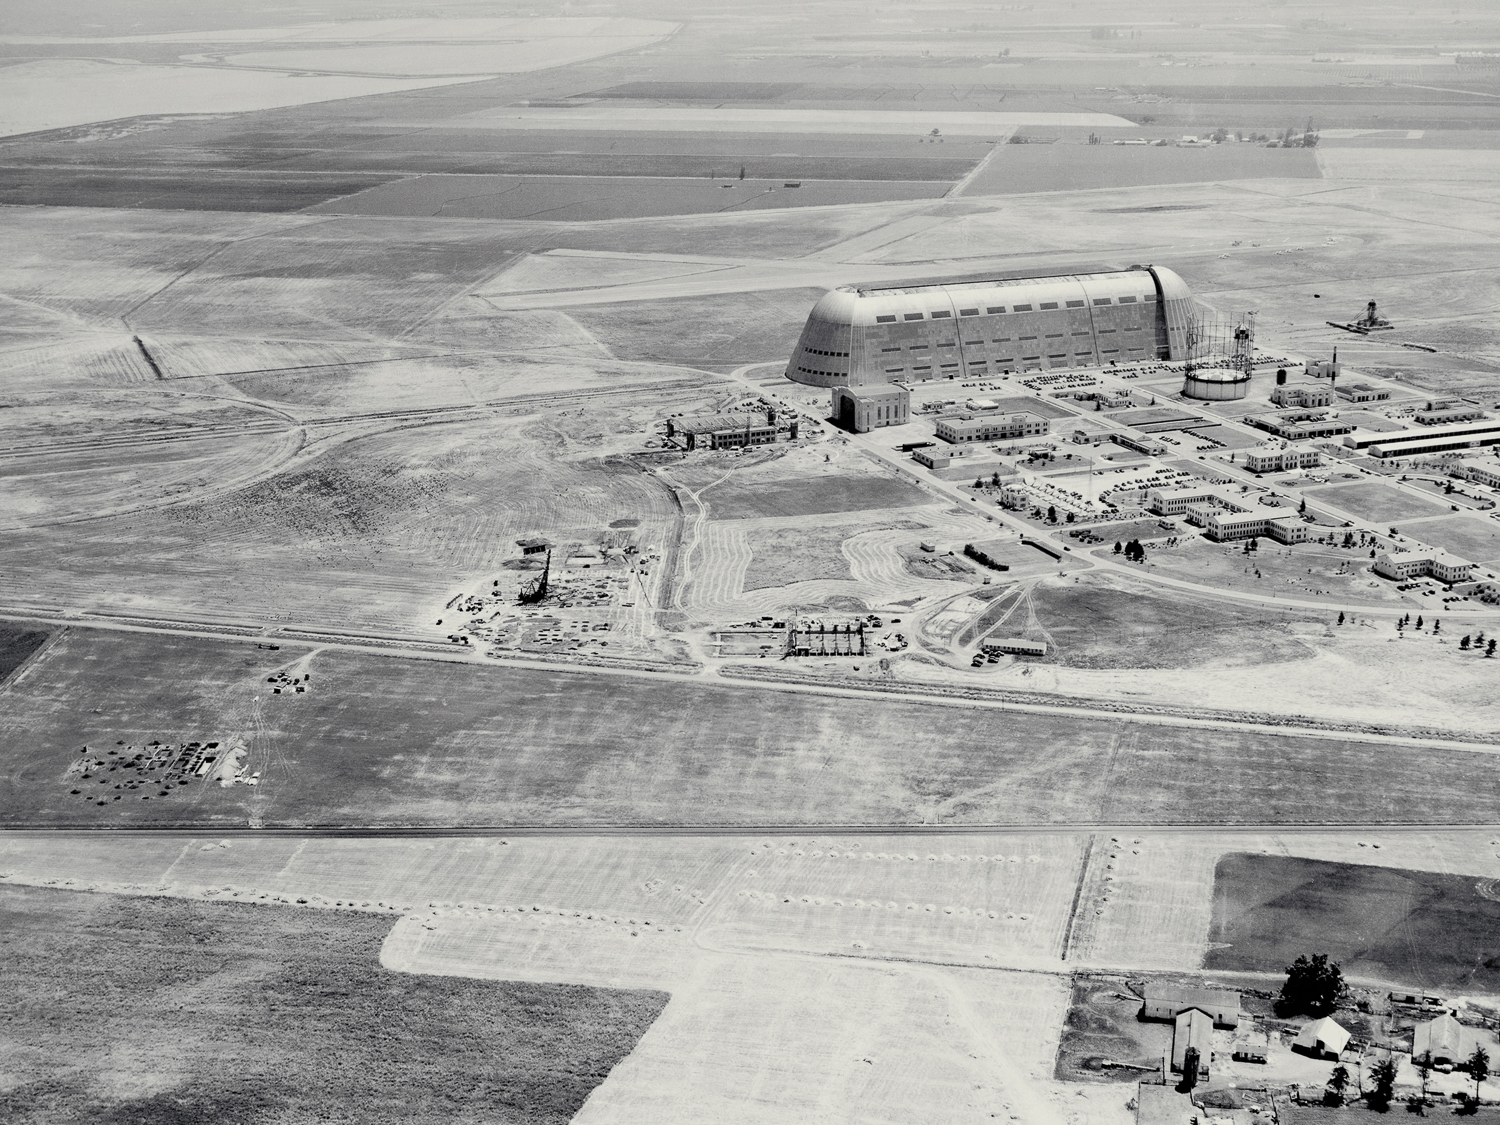 Hangar One at Moffett Federal Airfield circa 1940, image from NASA